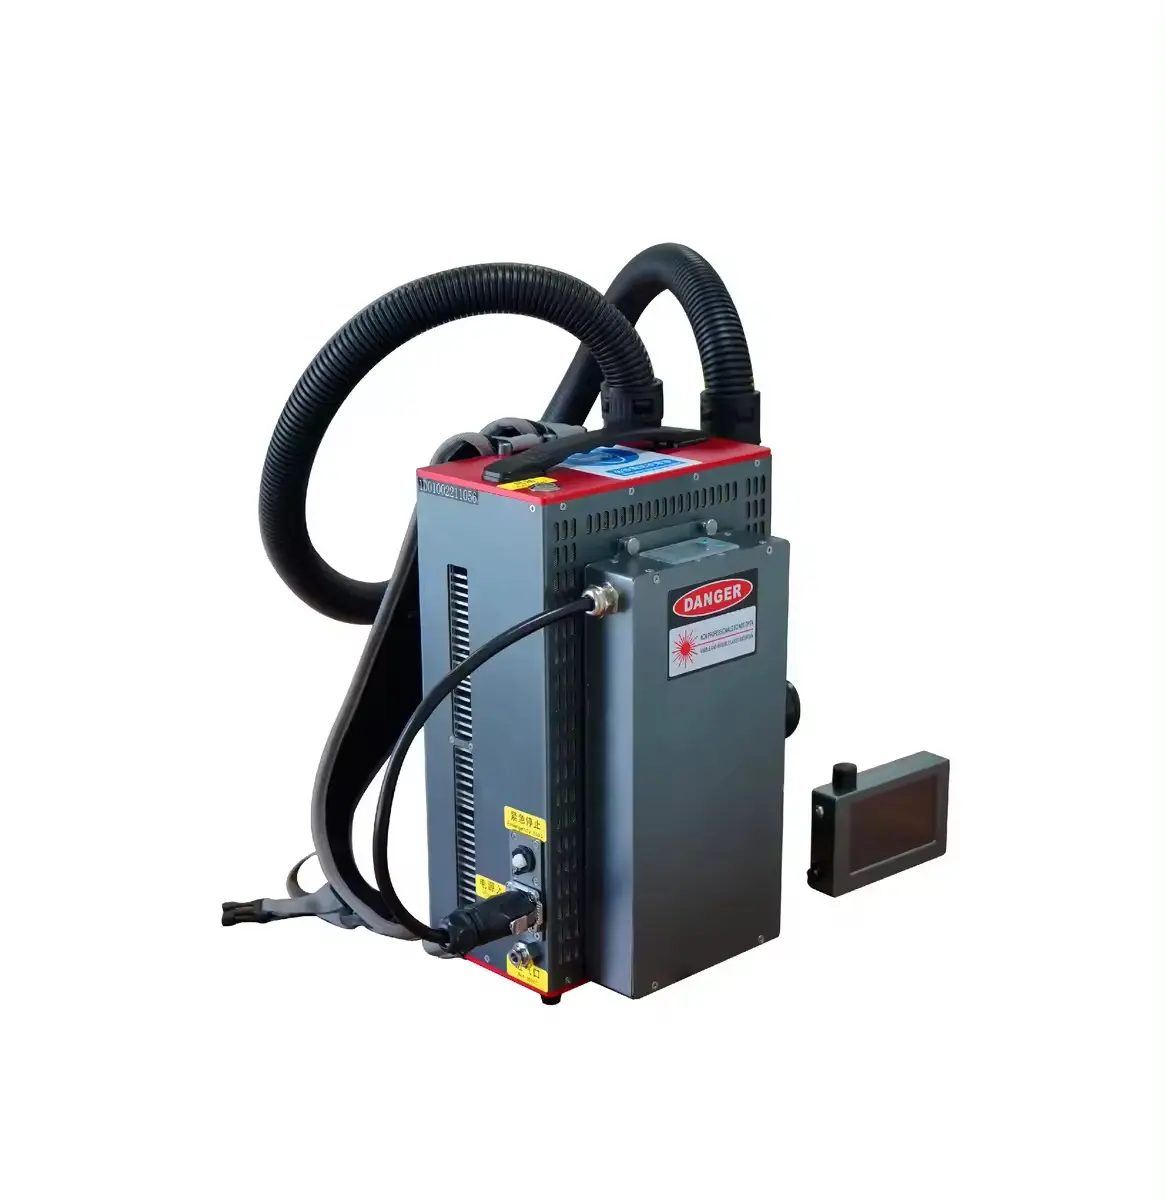 100W macchina per la pulizia laser a impulsi backpeck laser pulitore batteria lente protettiva per la rimozione della polvere di olio vernice ruggine